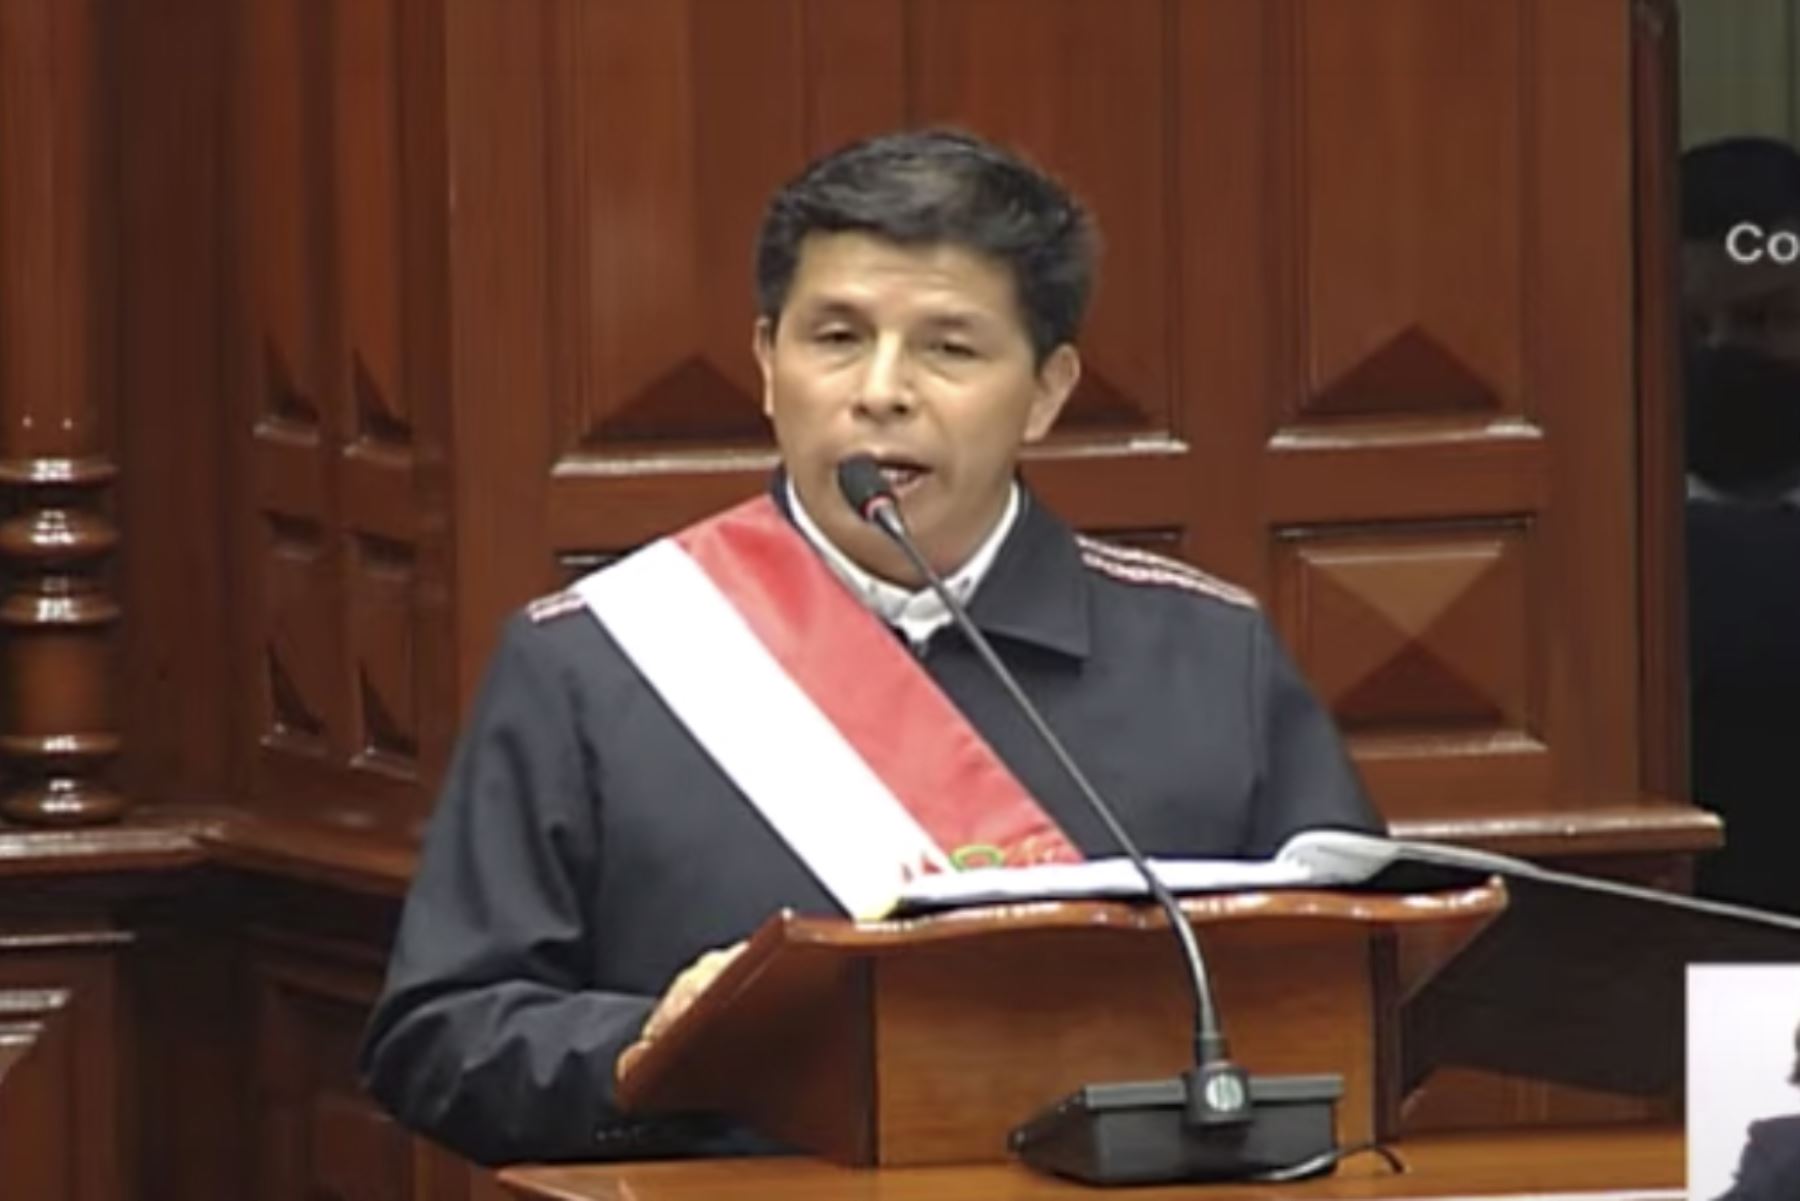 Portada: Pedro Castillo: "Aceptar los desaciertos de mi gobierno no implica mi participación en hechos delictivos"